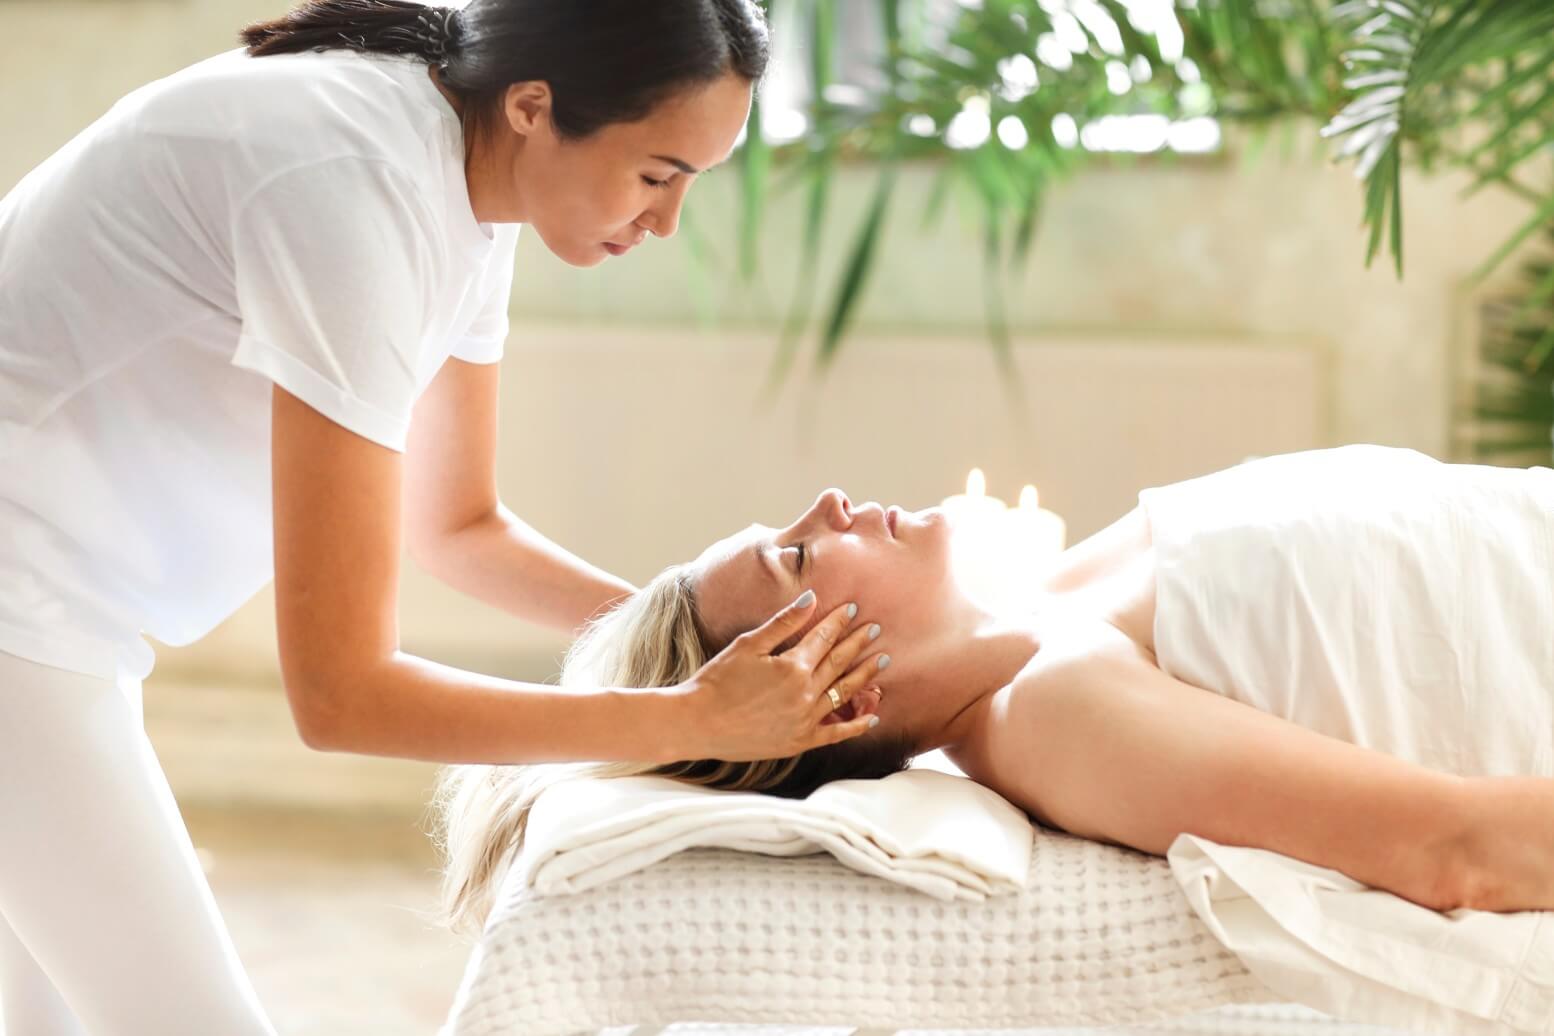 asian-masseuse-massaging-face-of-client-massage-spa-salon-masseur-women-therapist-healthy-wellness_t20_drPgkJ